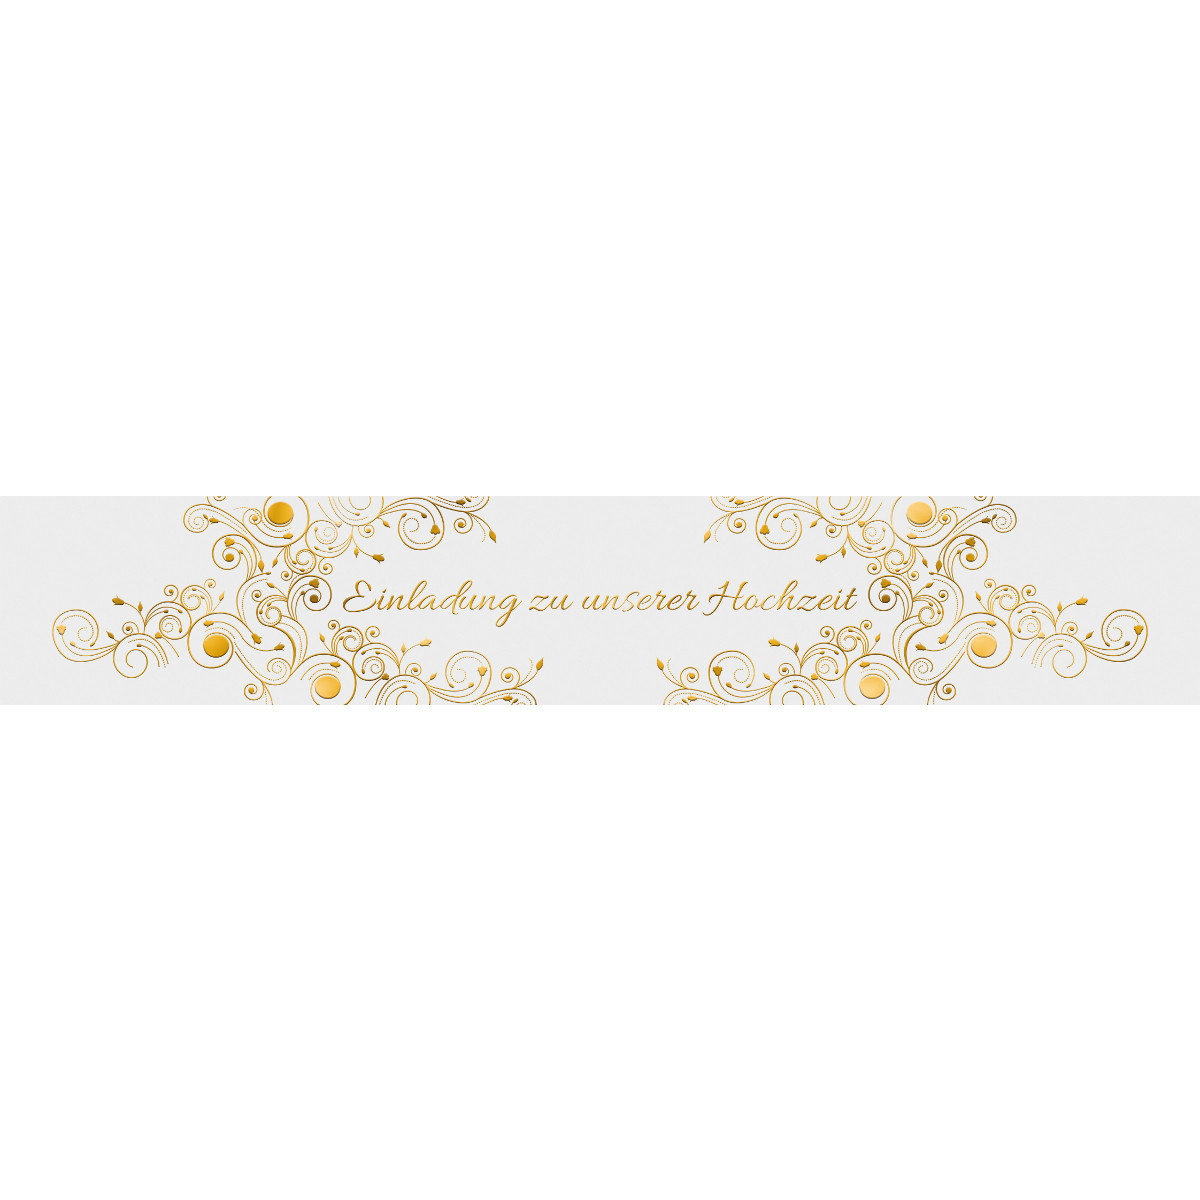 Banderolen "Einladung zu unserer Hochzeit" weiß/gold - Motiv 08